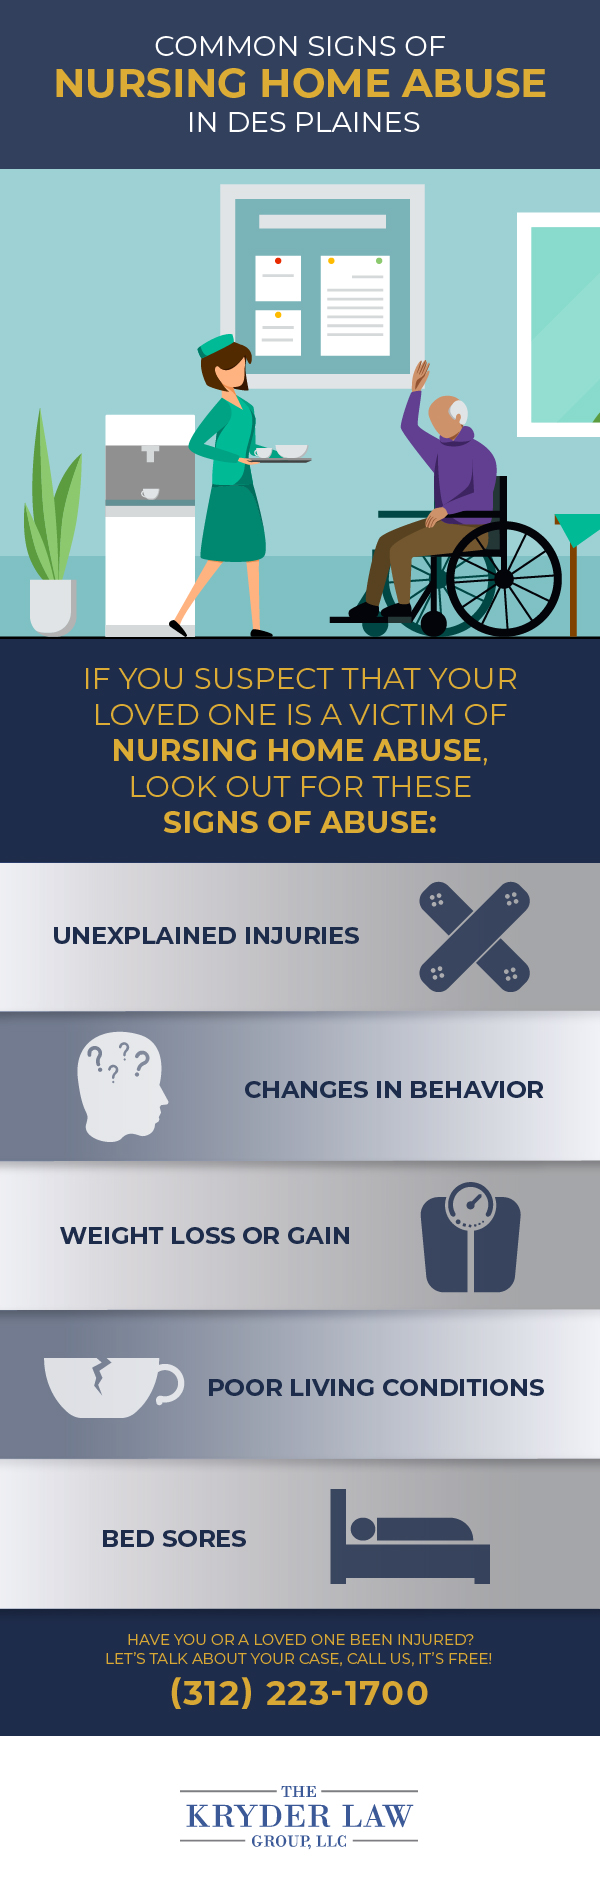 Signos comunes de abuso en hogares de ancianos en Des Plaines